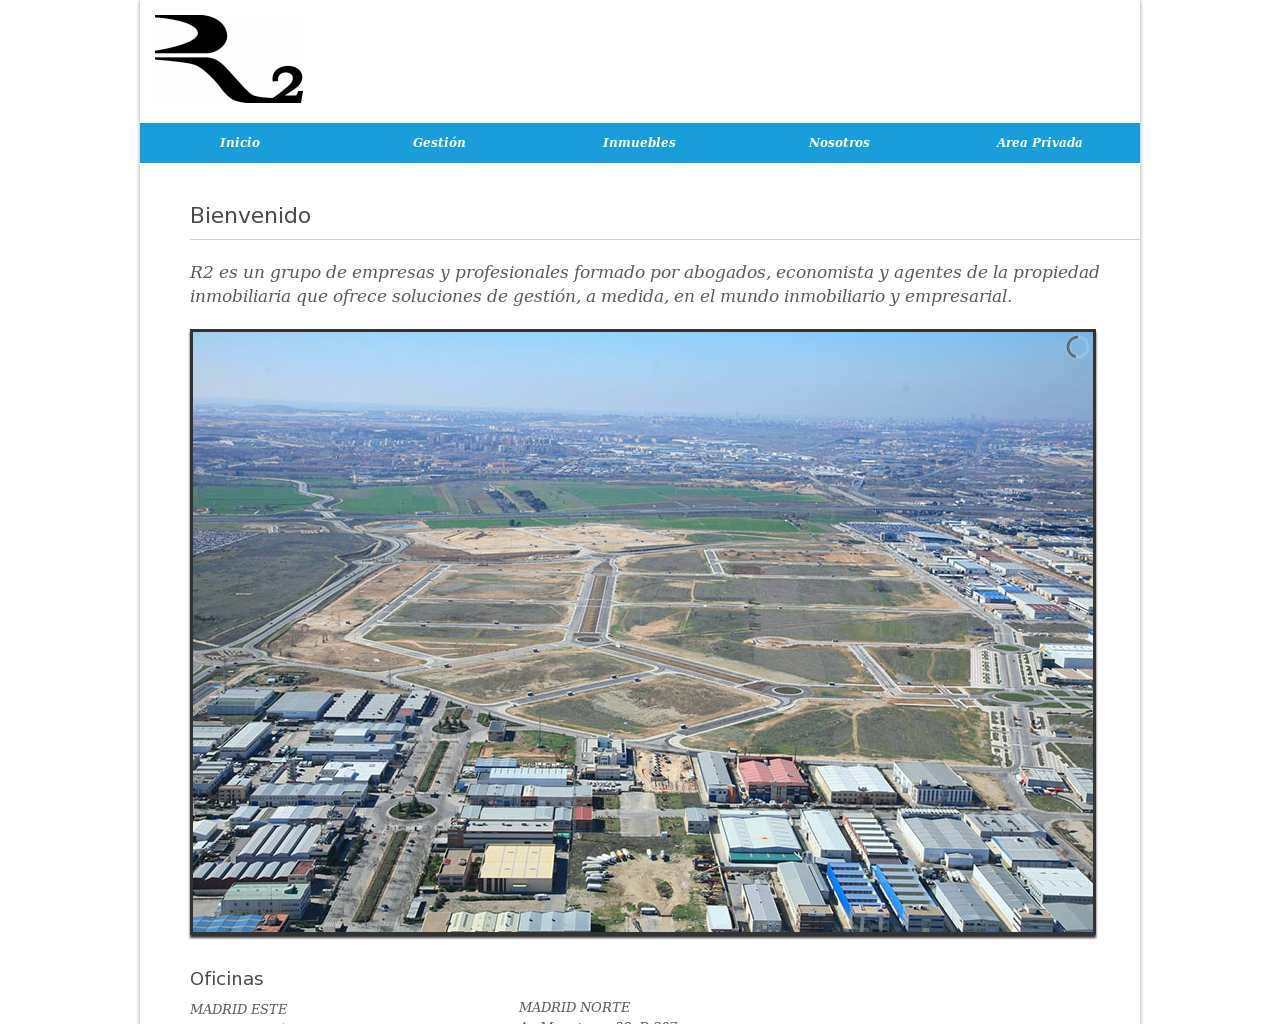 El sitio de la imagen r2a2.es en 1280x1024